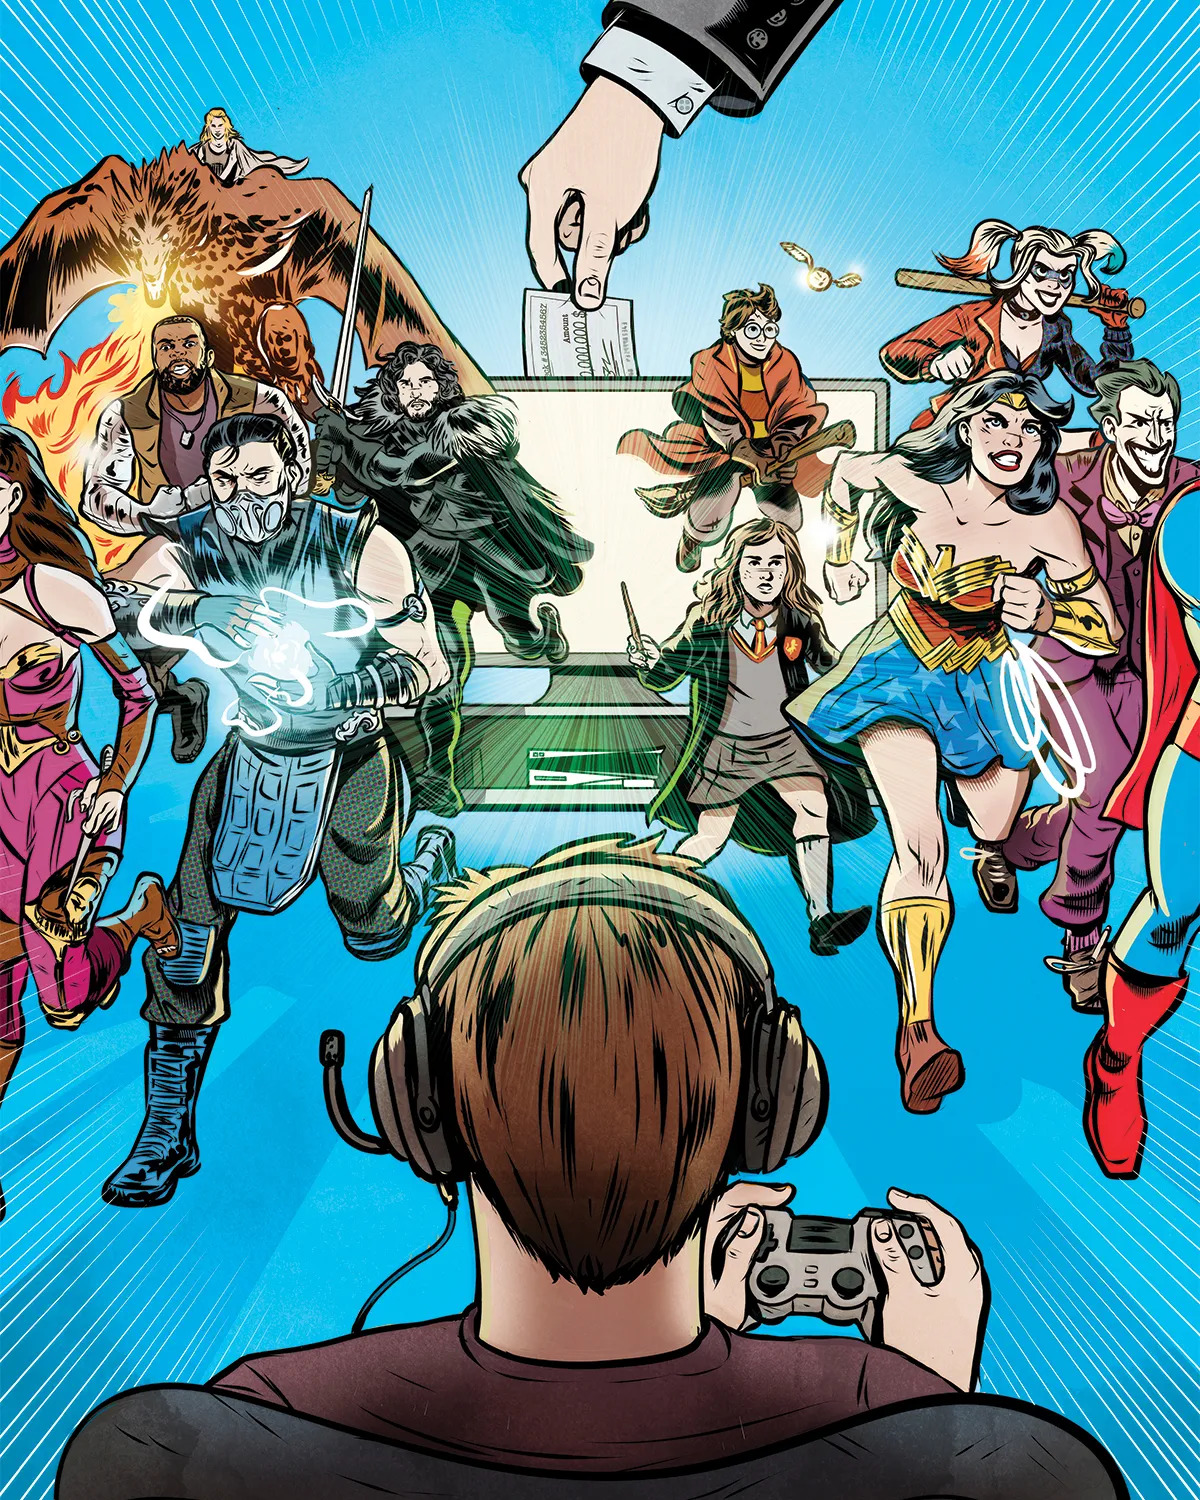 華納兄弟希望DC“永遠在線”的遊戲能夠獲得成功